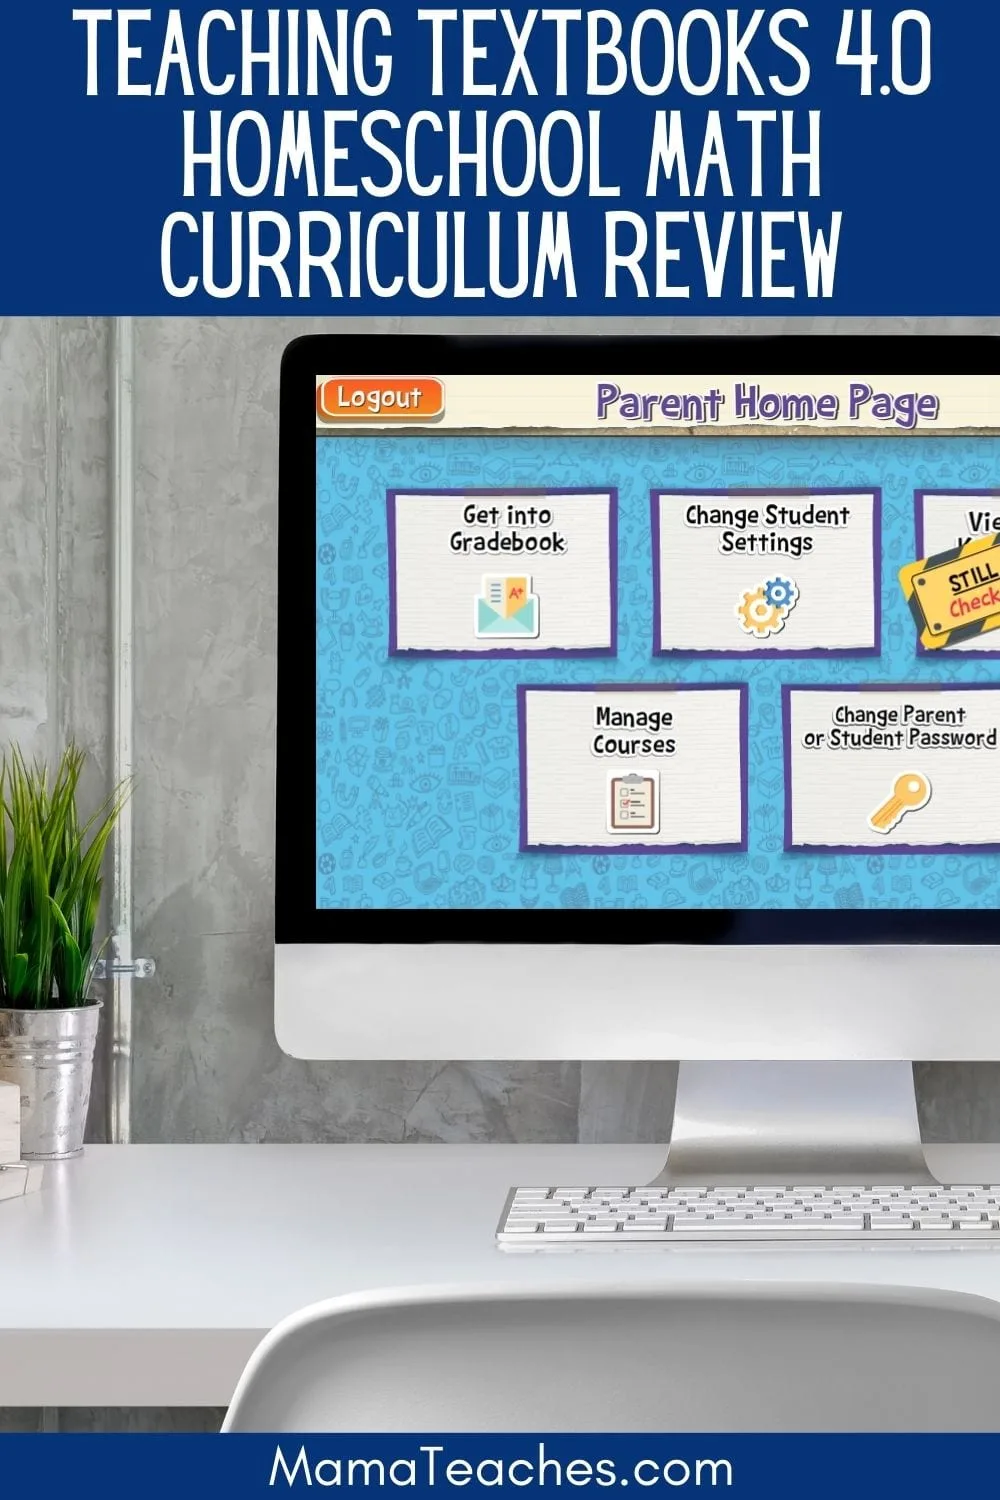 Teaching Textbooks 4.0 Homeschool Math Curriculum Review